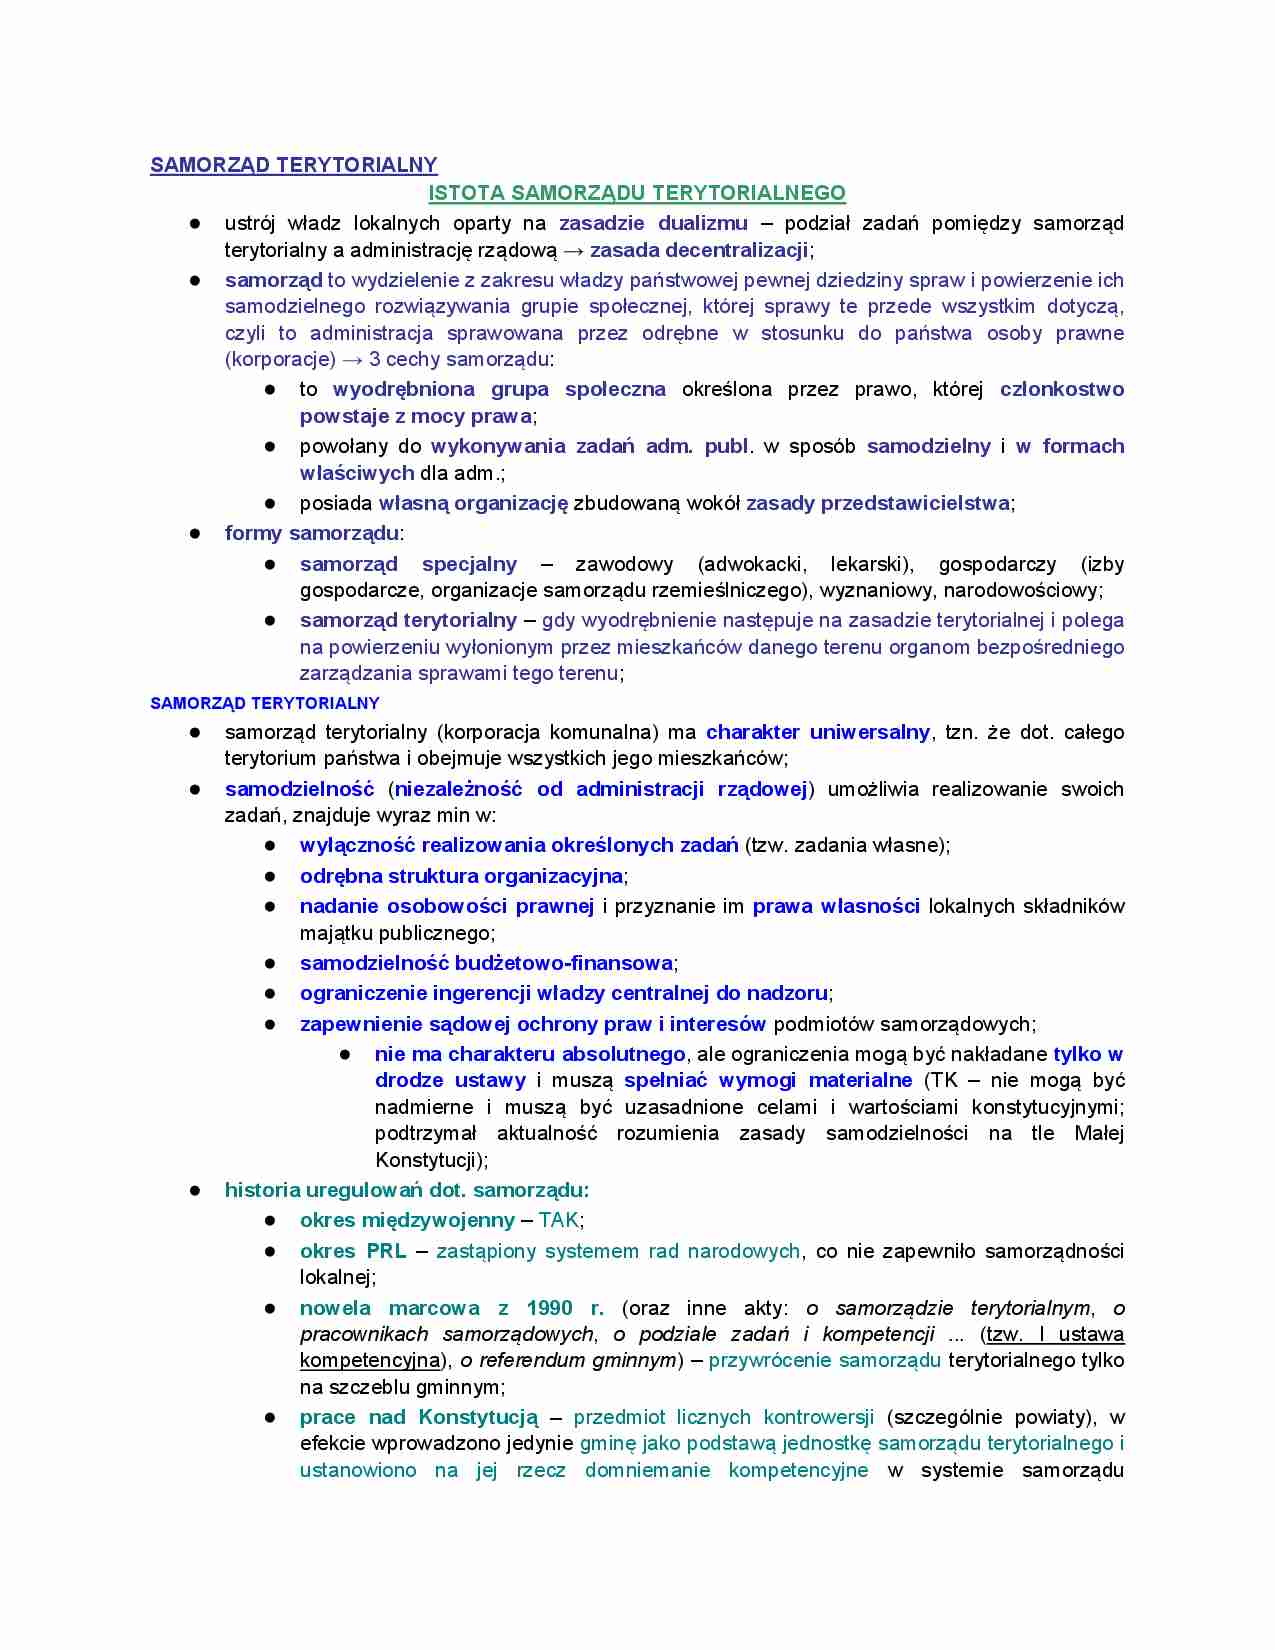 Istota samorządu terytorialnego - Administracja rządowa w Polsce - strona 1